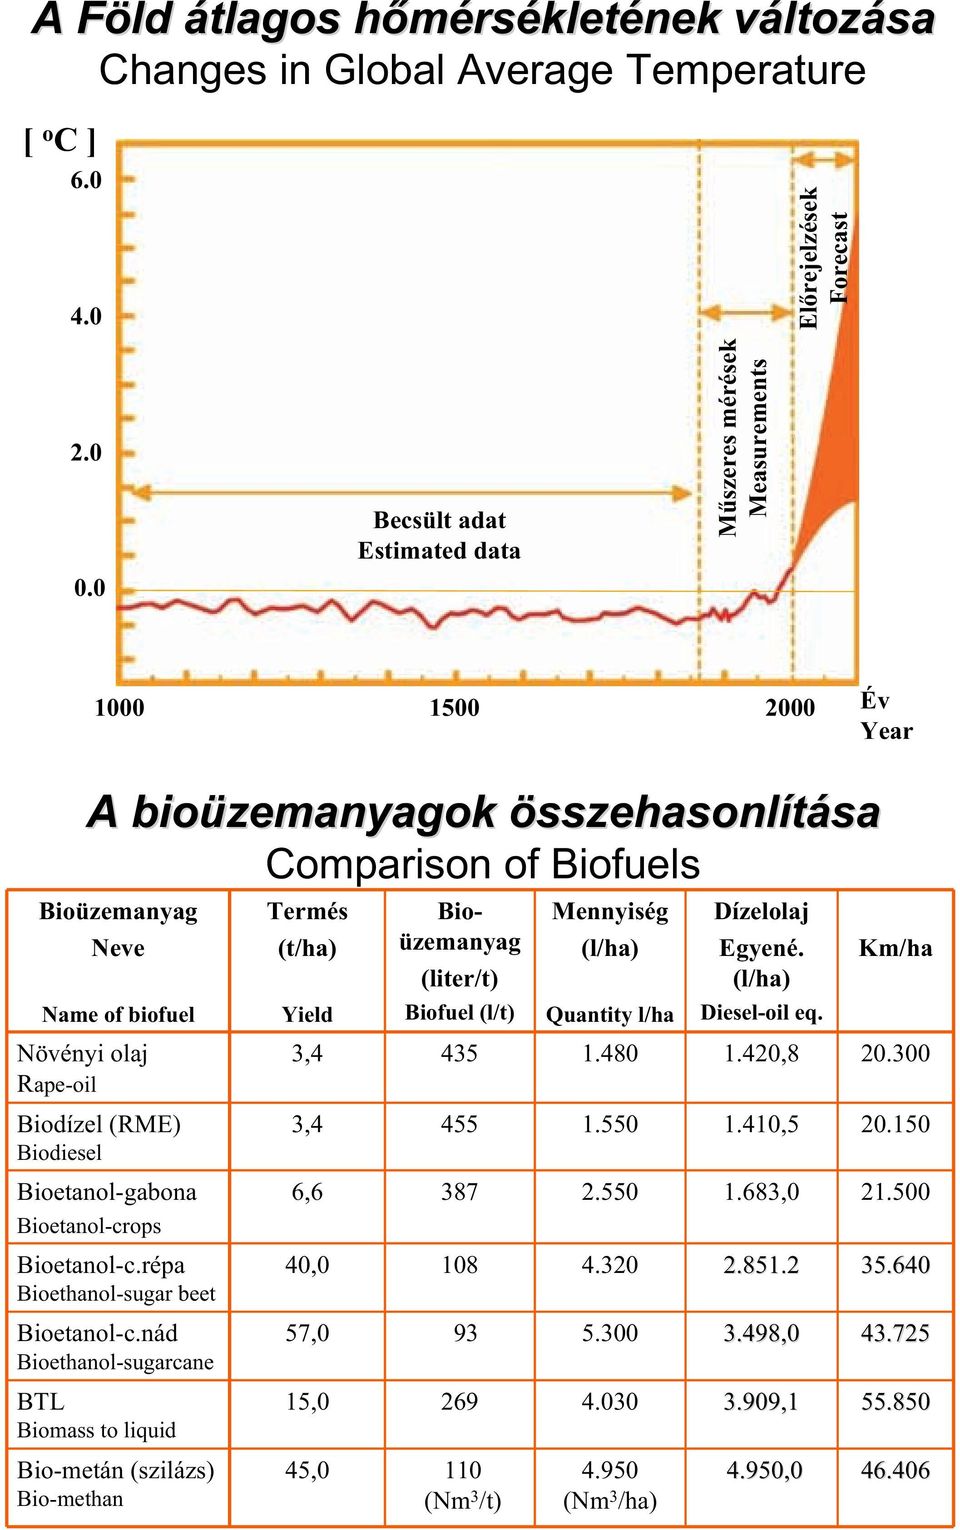 Biodízel (RME) Biodiesel Bioetanol-gabona Bioetanol-crops Bioetanol-c.répa Bioethanol-sugar beet Bioetanol-c.